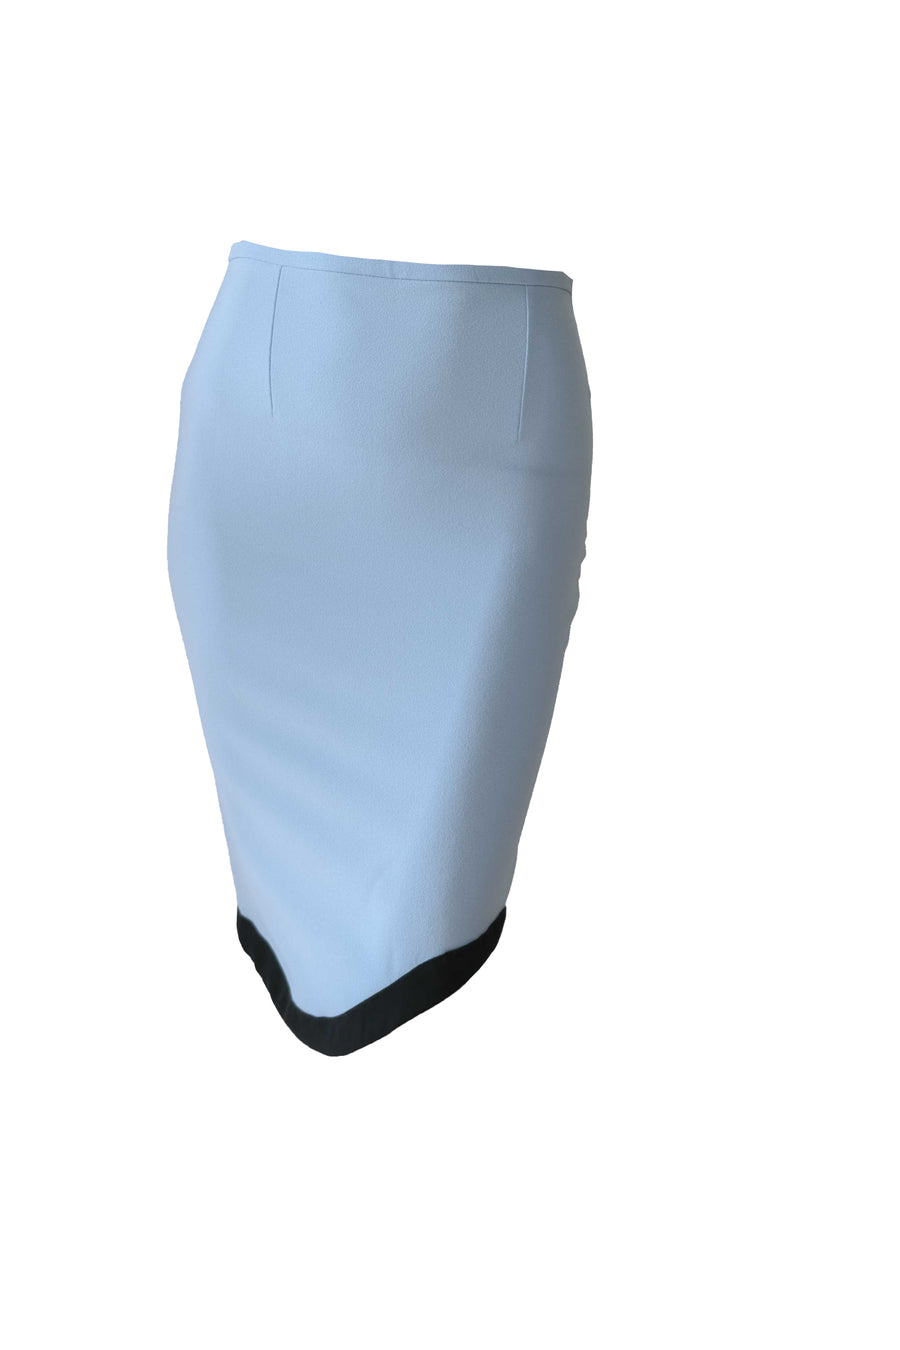 High Waist Pencit Cut Skirt - LIght Blue